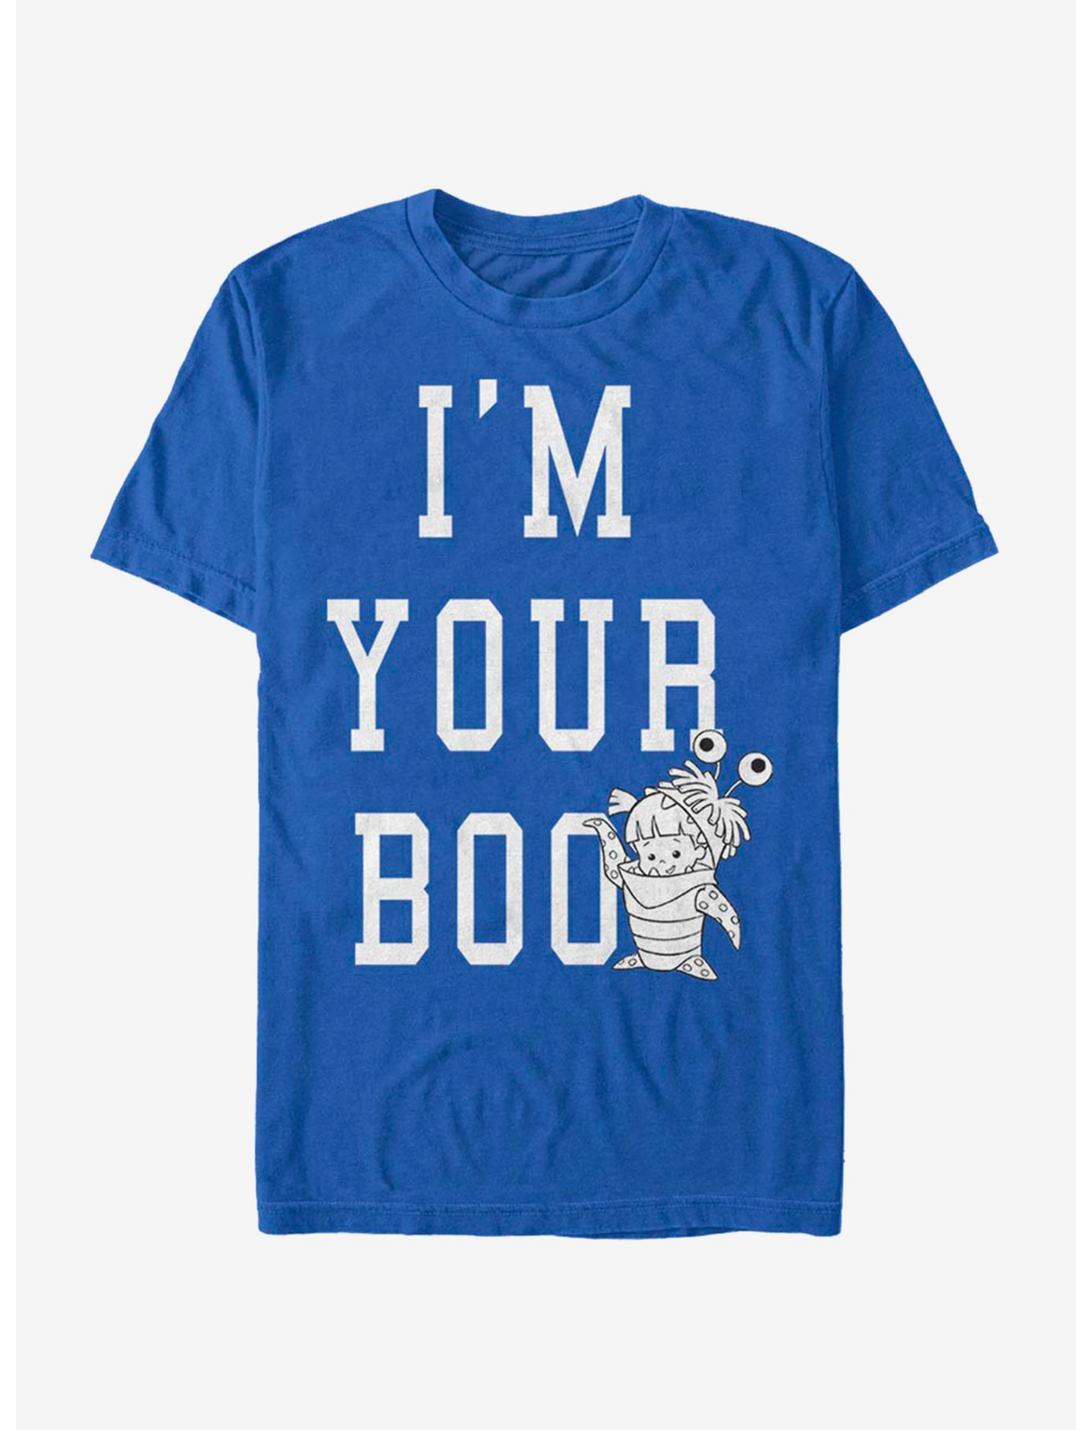 Disney Pixar Monsters University Boo T-Shirt, ROYAL, hi-res